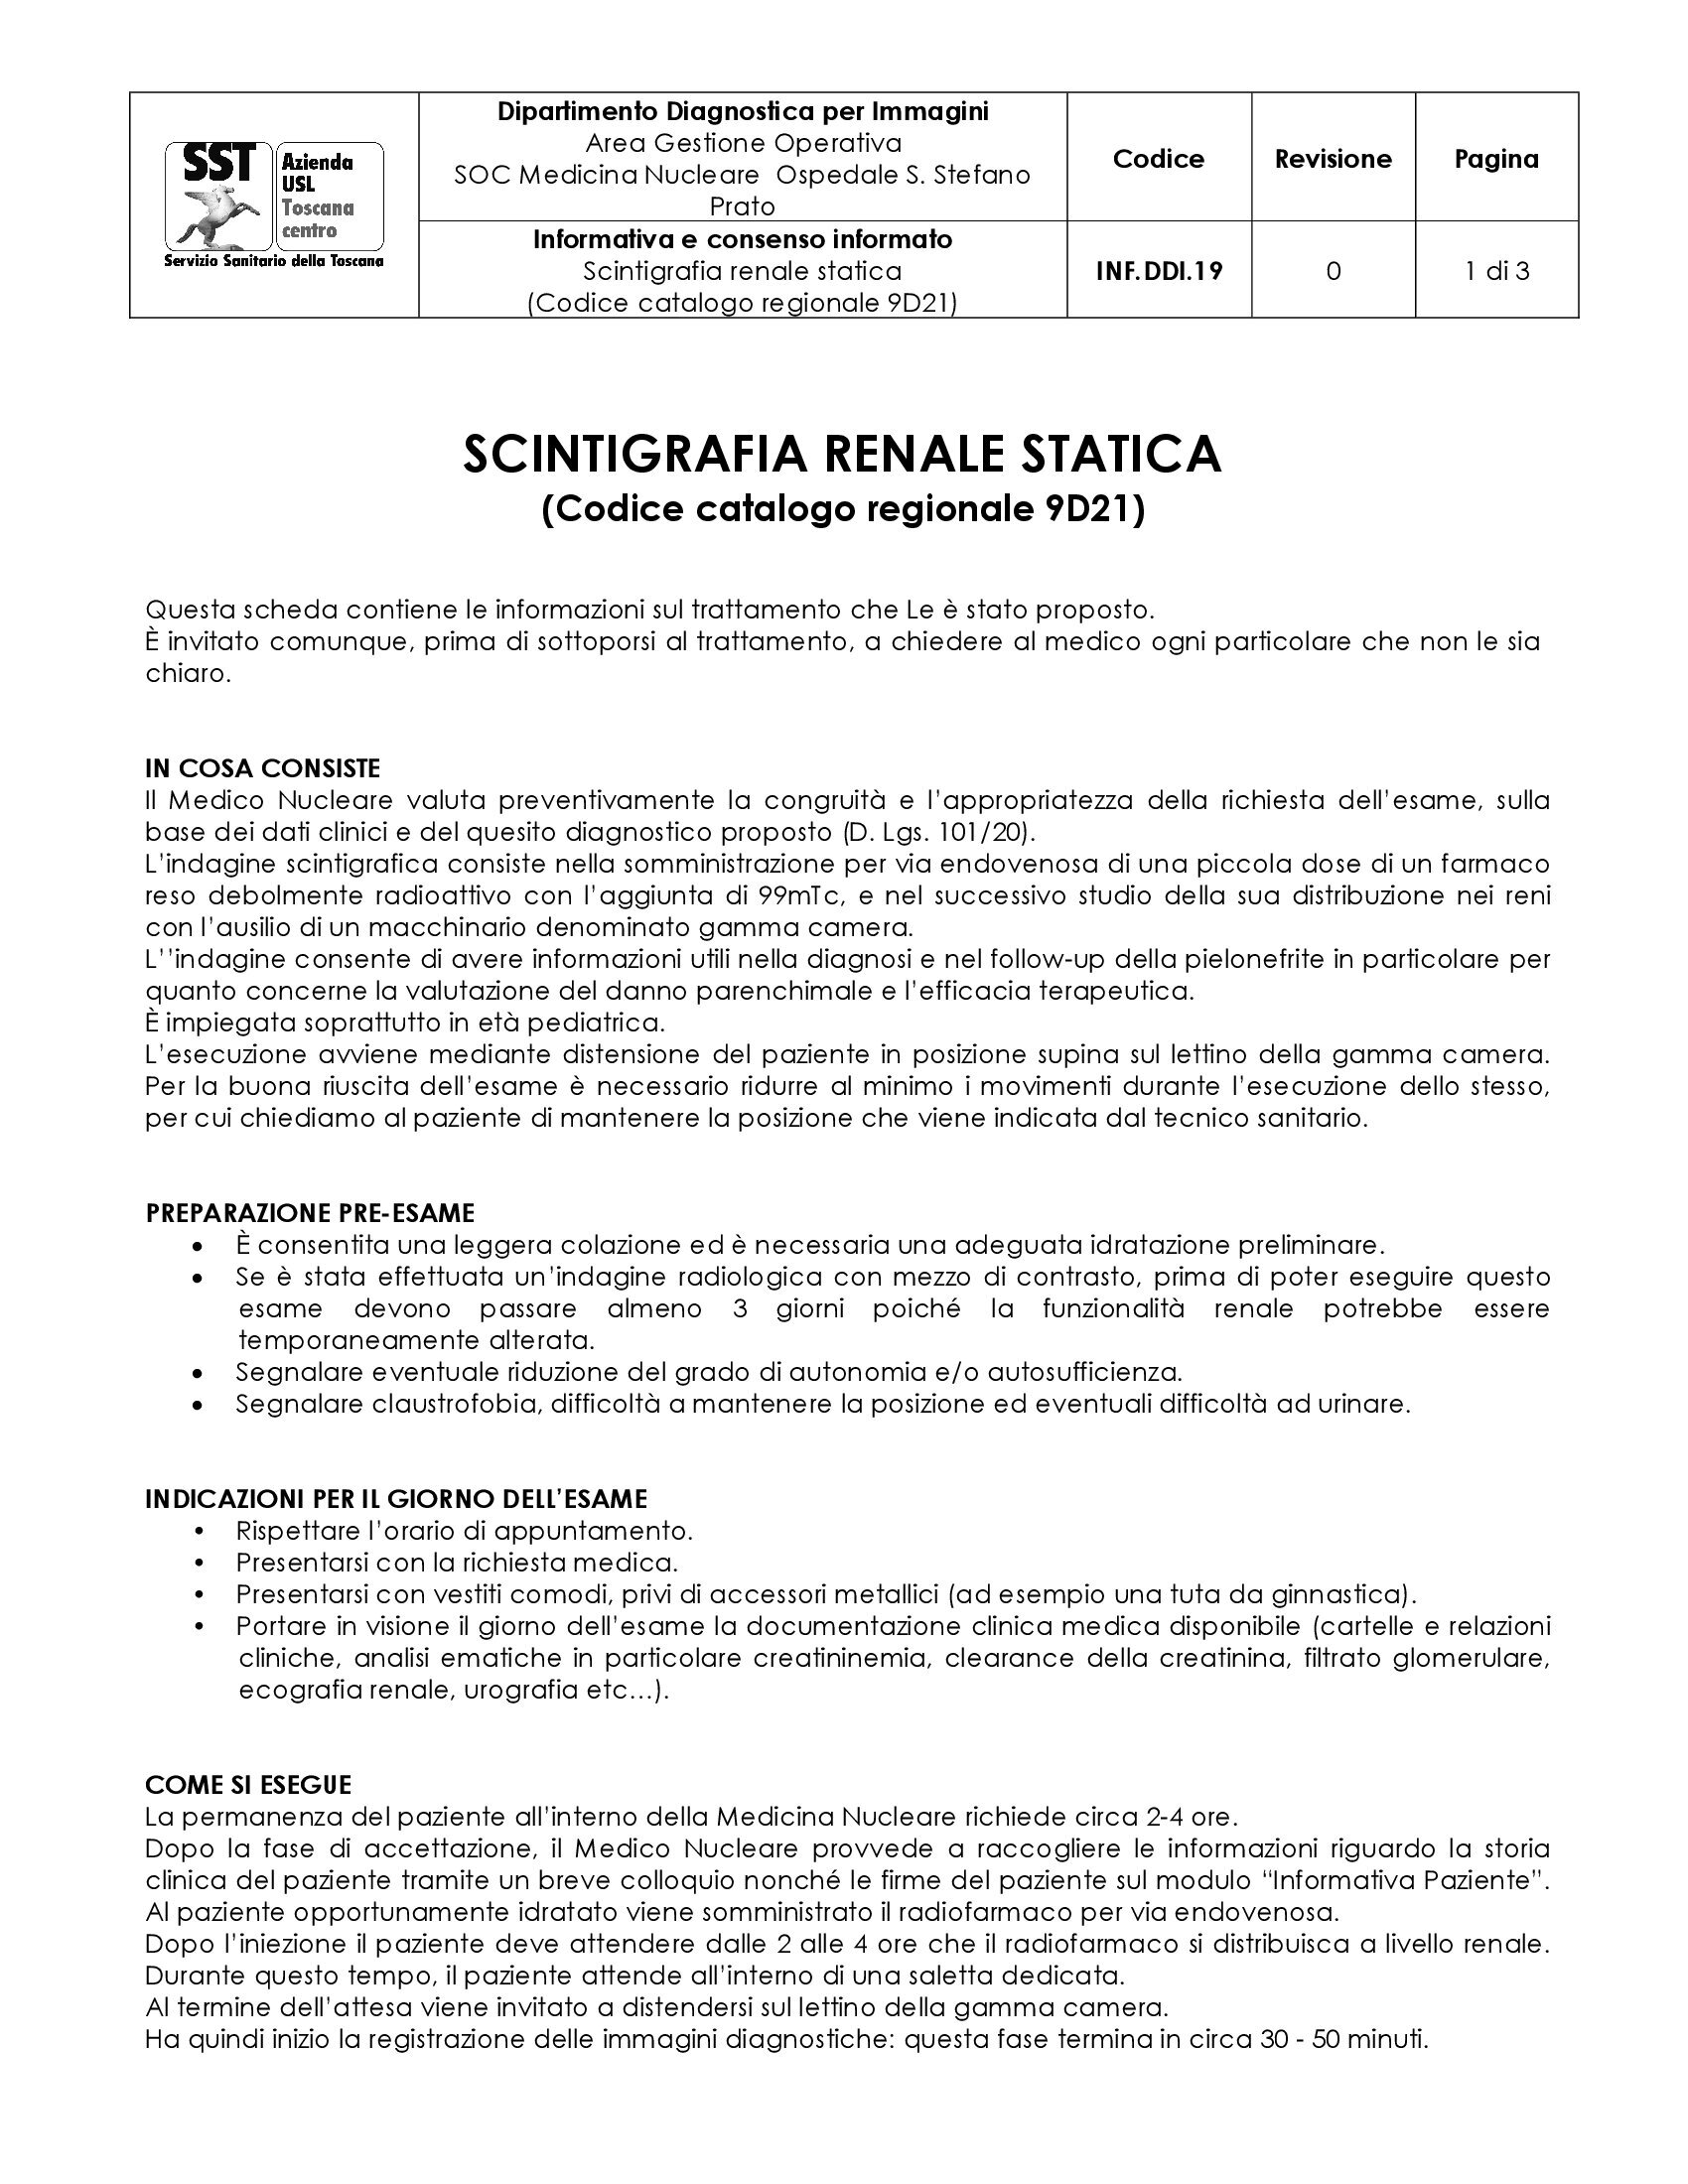 INF.DDI.19 Scintigrafia renale statica (Codice catalogo regionale 9D21)